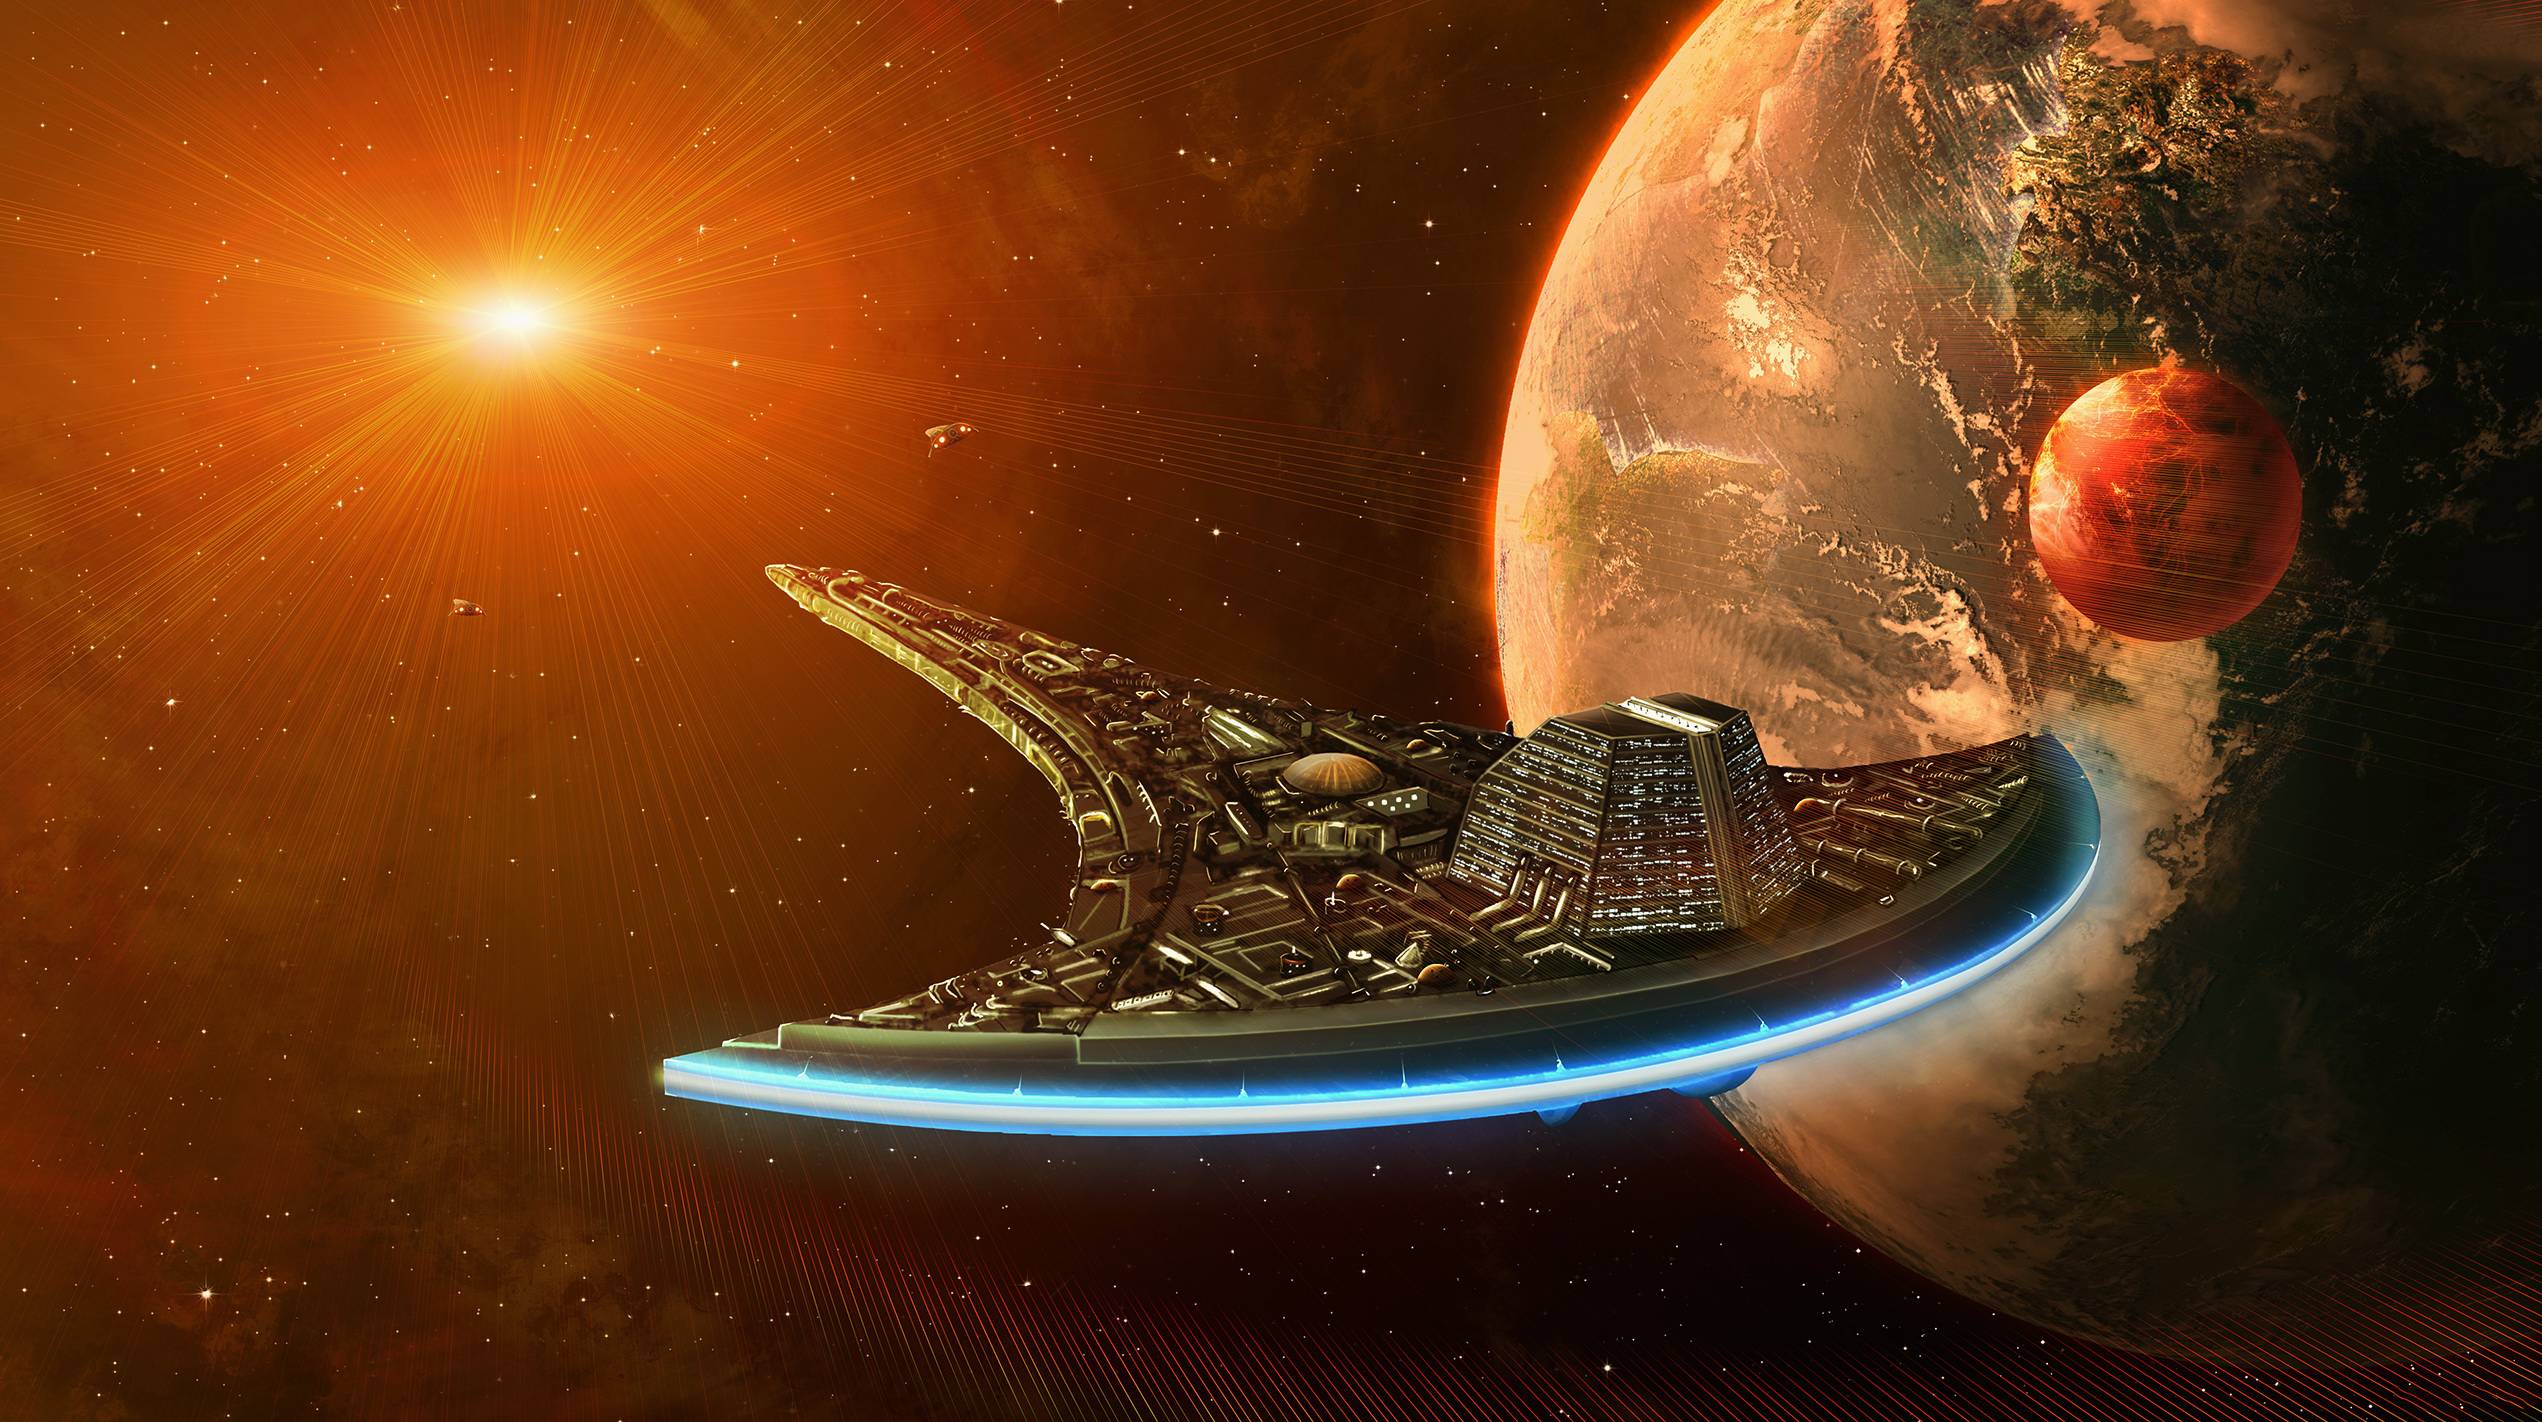 Download wallpaper "Destiny", "Destiny", starship, Stargate